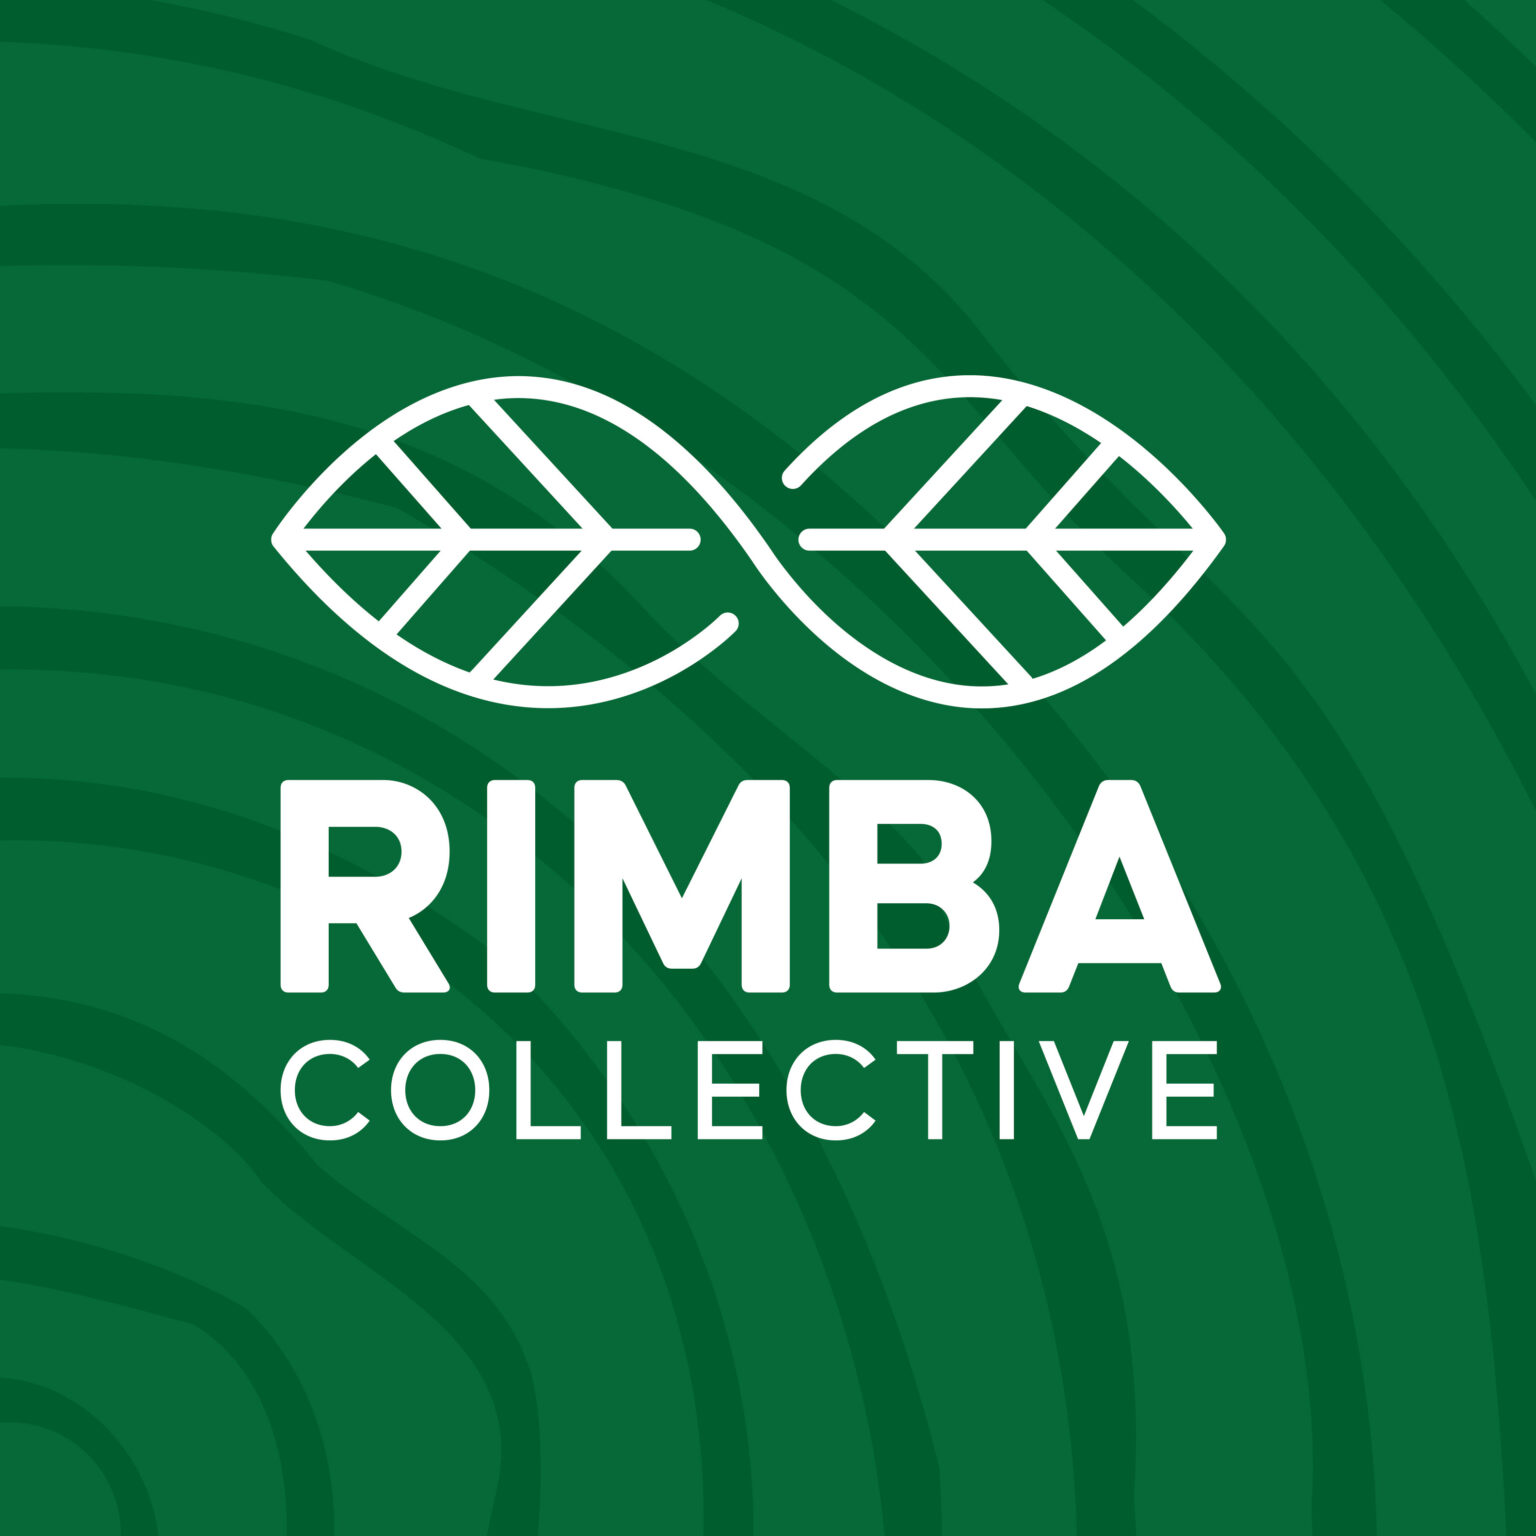 RImba collective logo